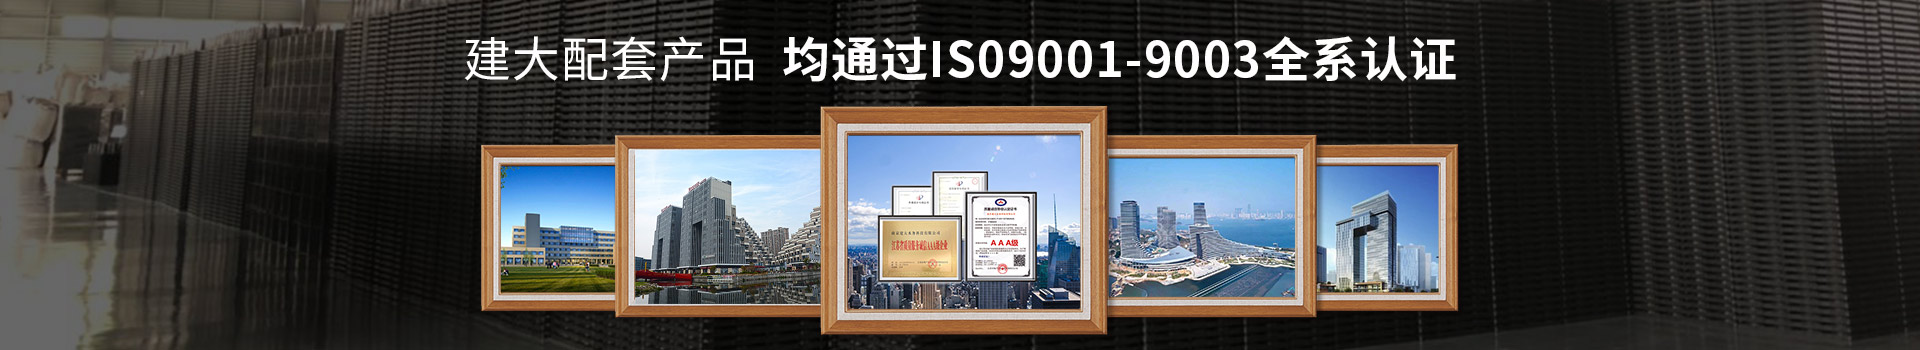 建大环测配套产品 均通过IS09001-9003全系认证